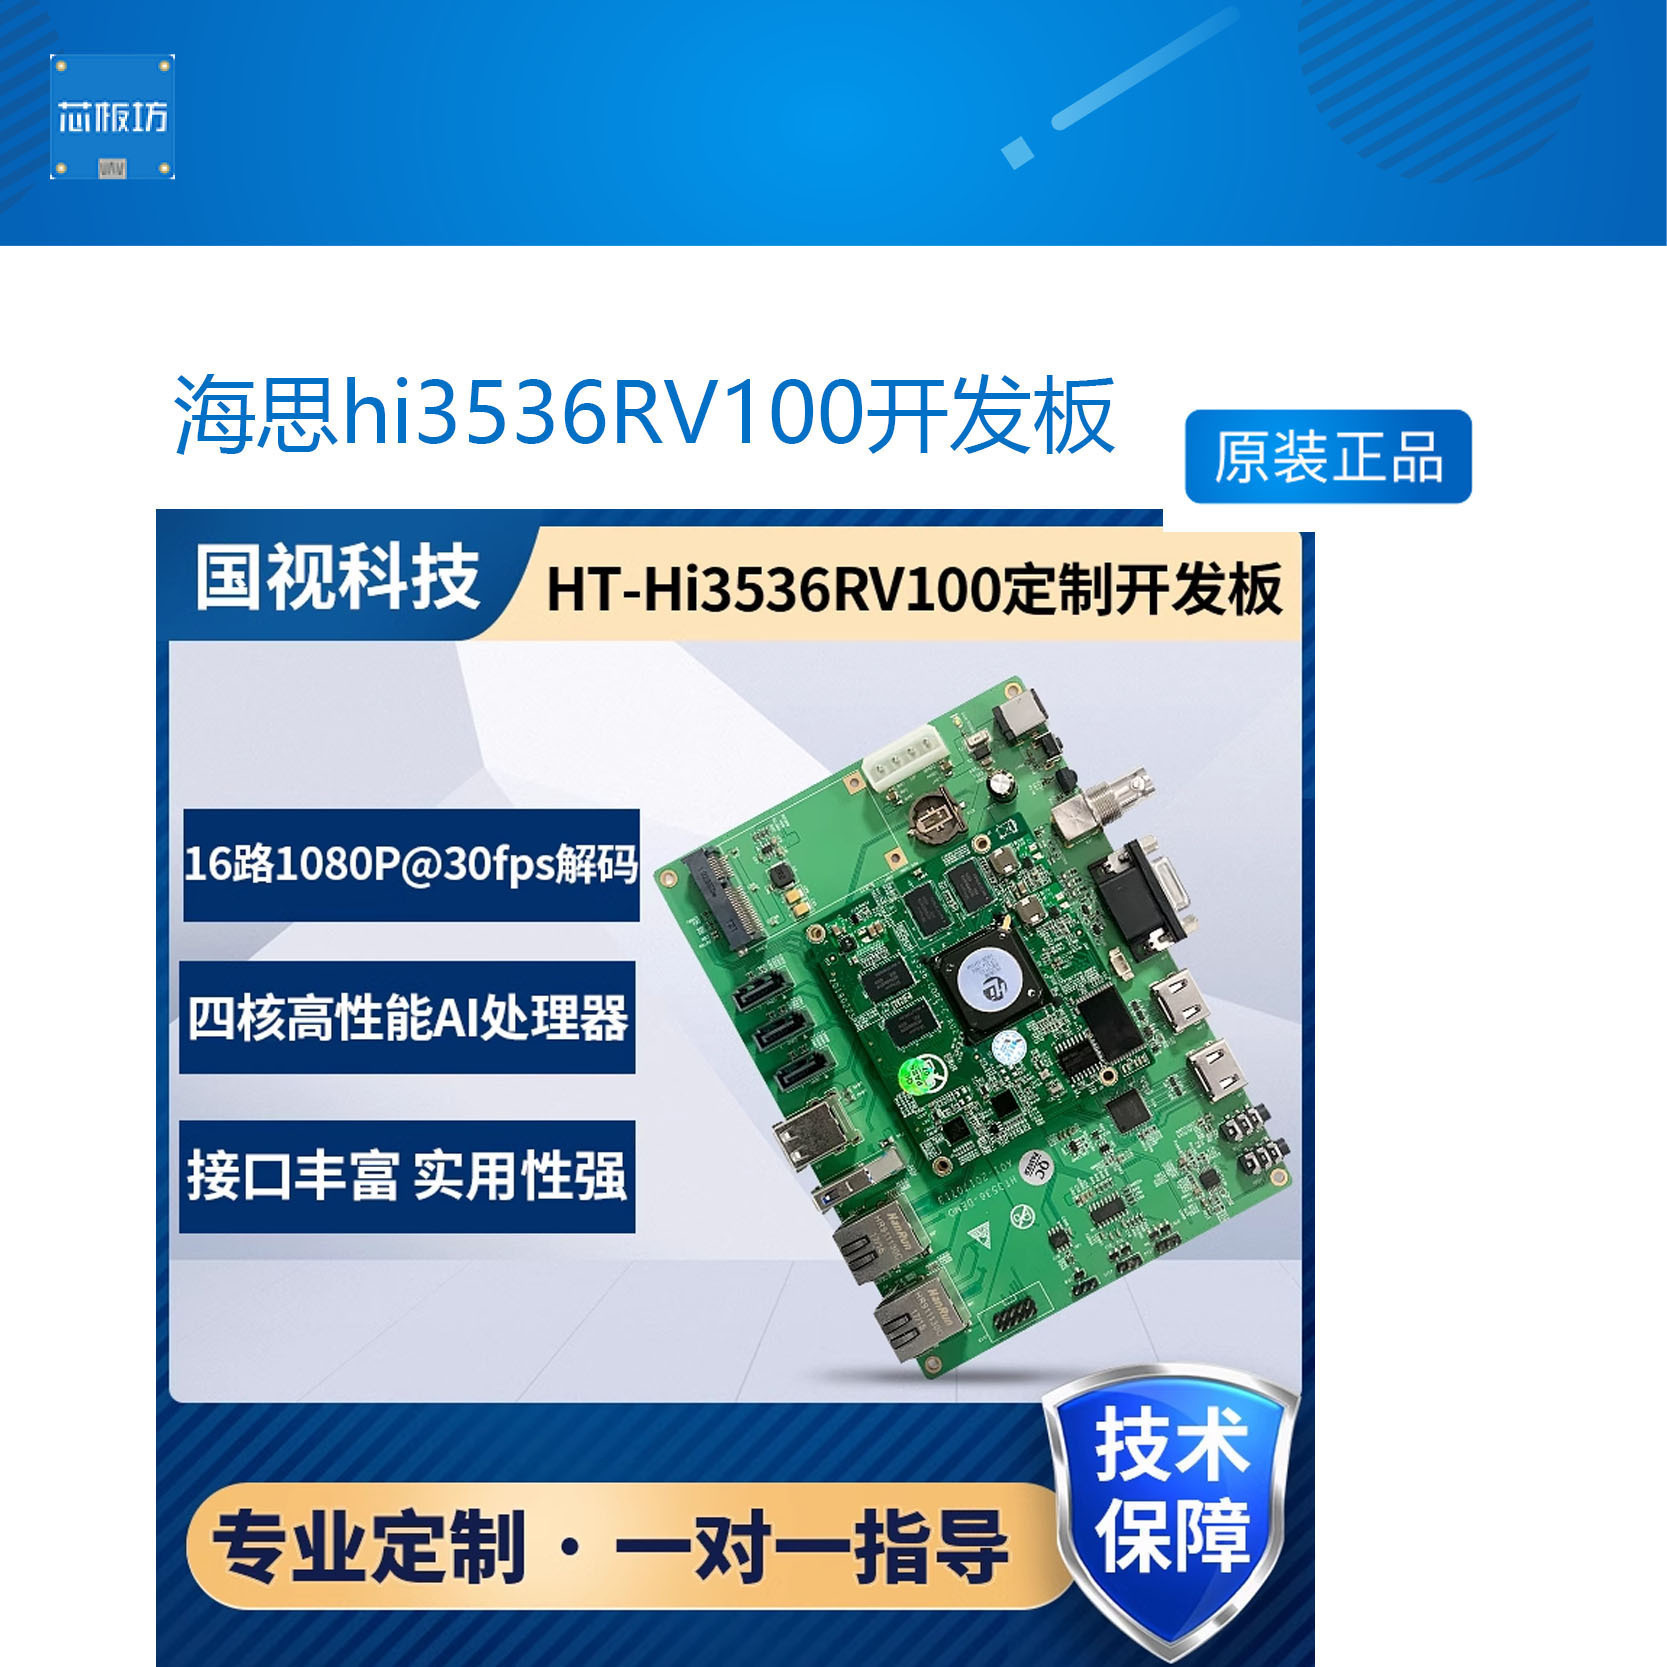 海思hi3536RV100开发板 hi3536支持4K1080p H264/265解码ARMA17 电子元器件市场 开发板/学习板/评估板/工控板 原图主图